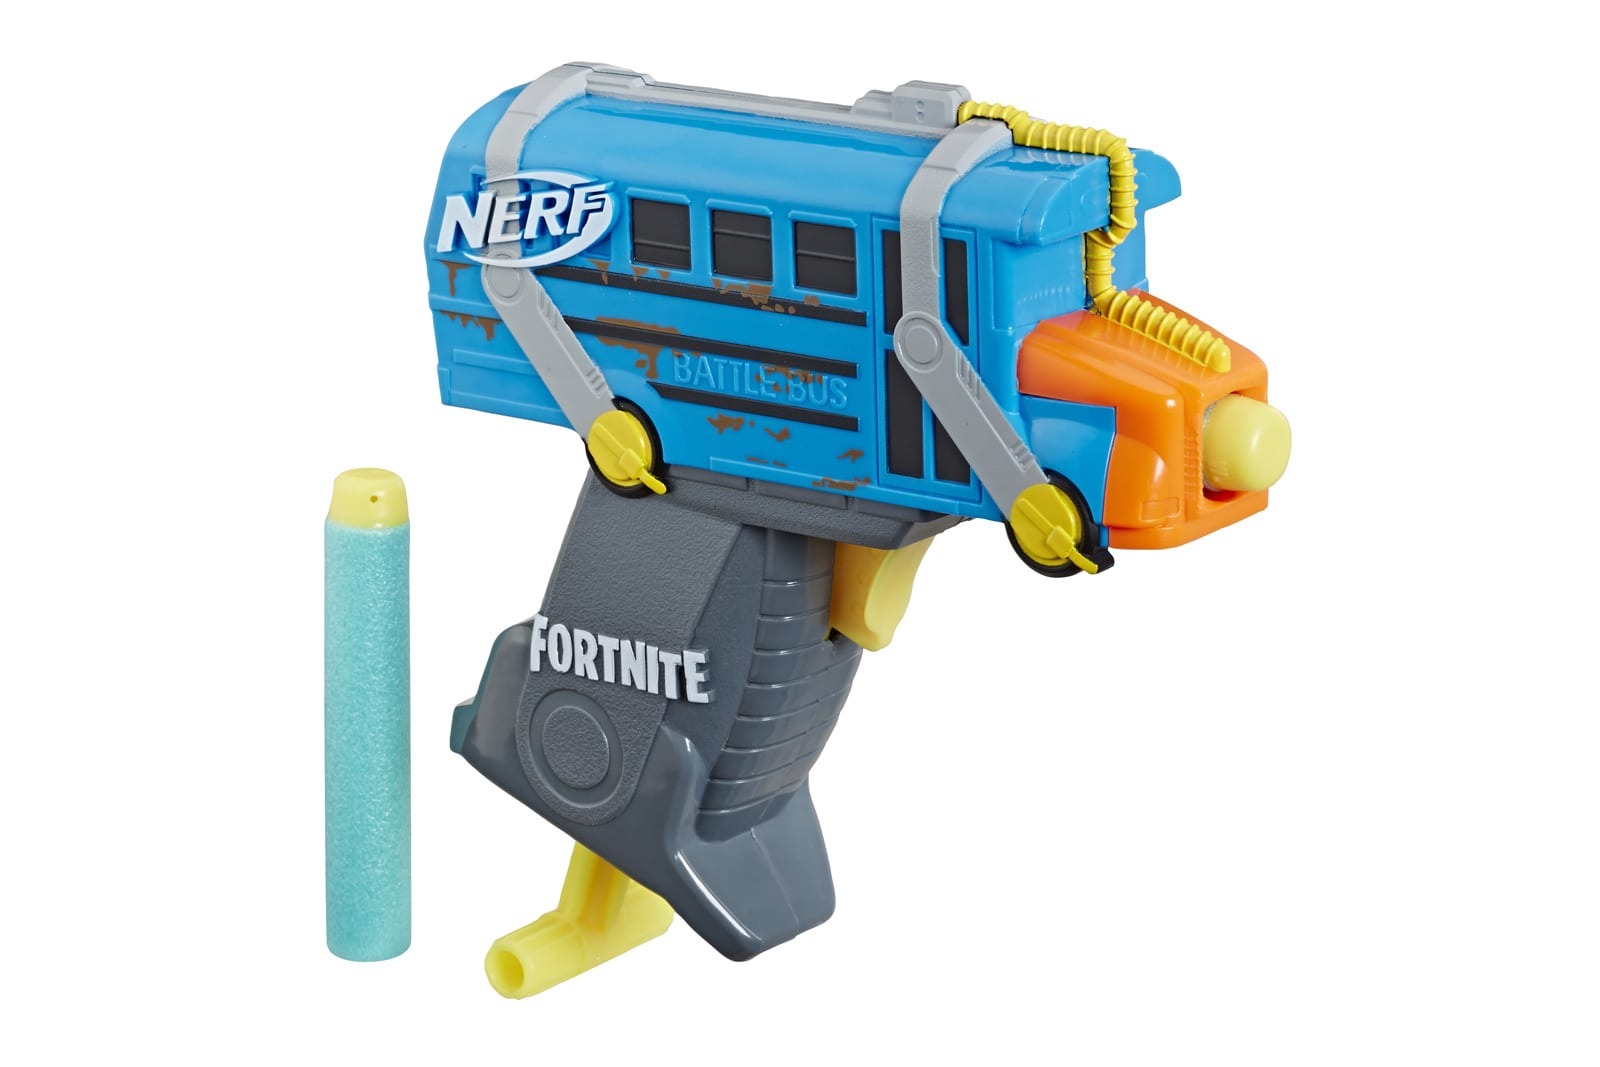 Nerf 'Fortnite' Battle Bus MicroShots blaster